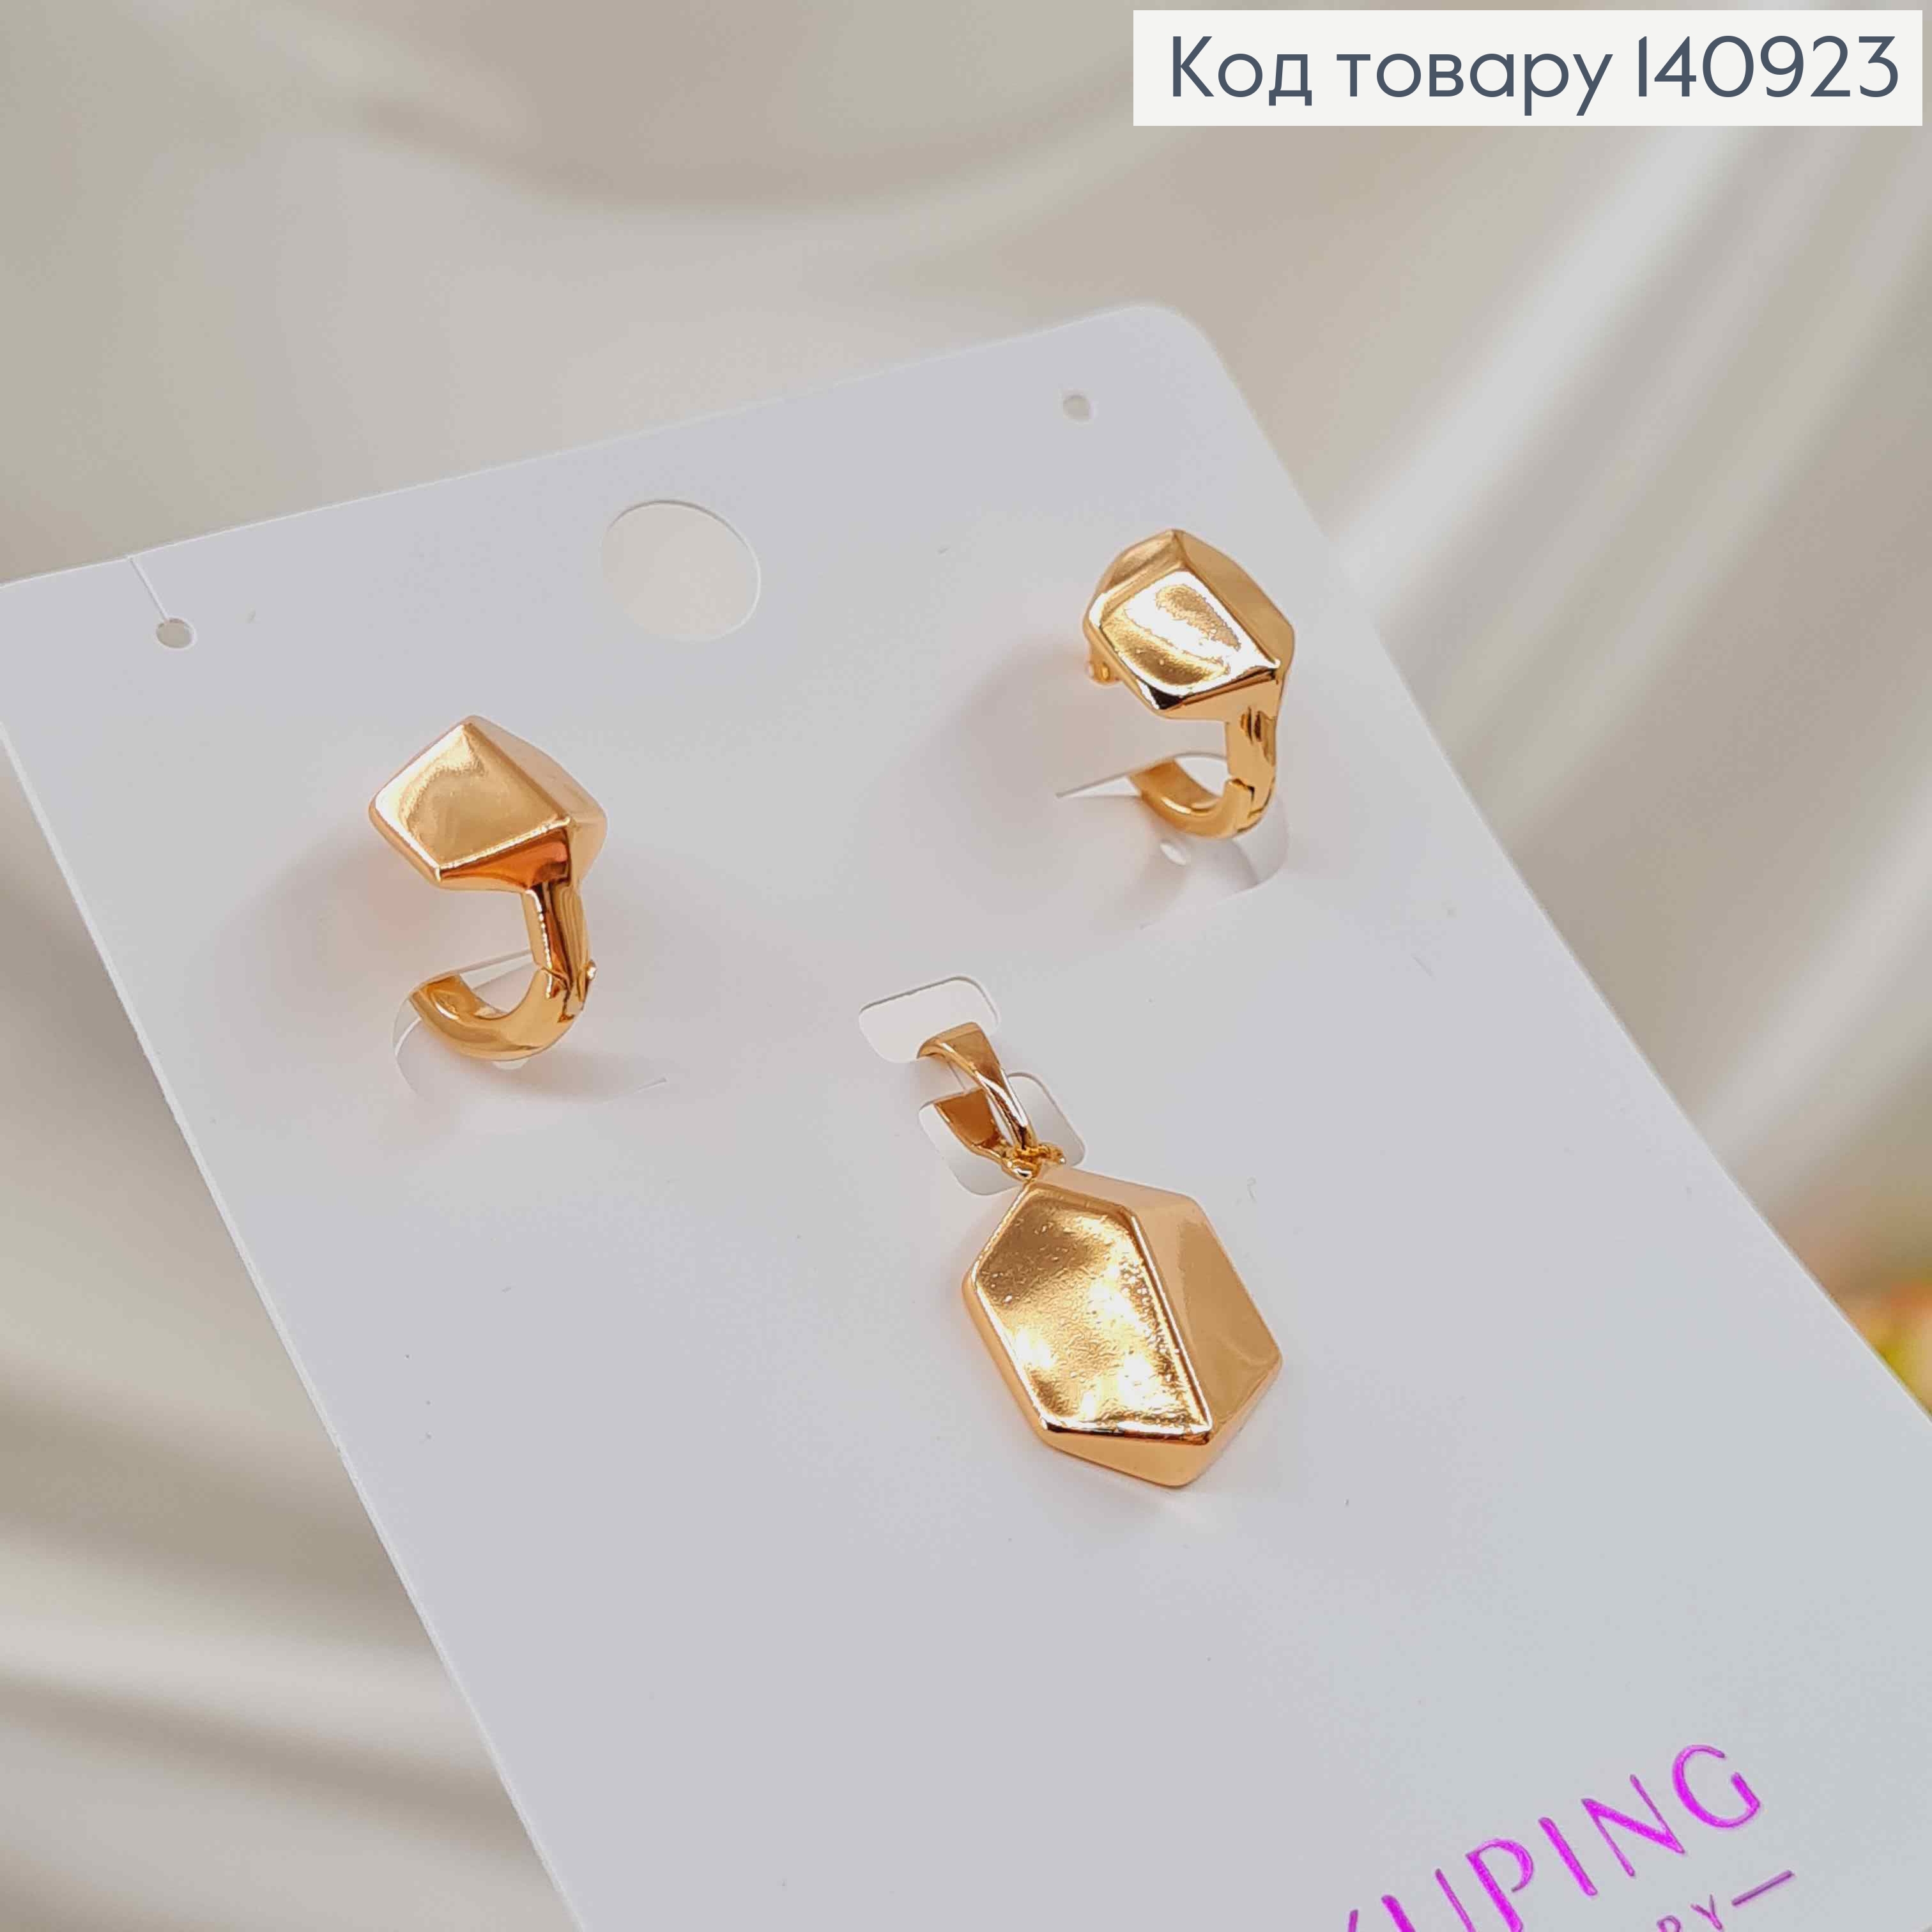 Набор кольца серьги и кулоны, гранни, Xuping 18k. 140923 фото 2